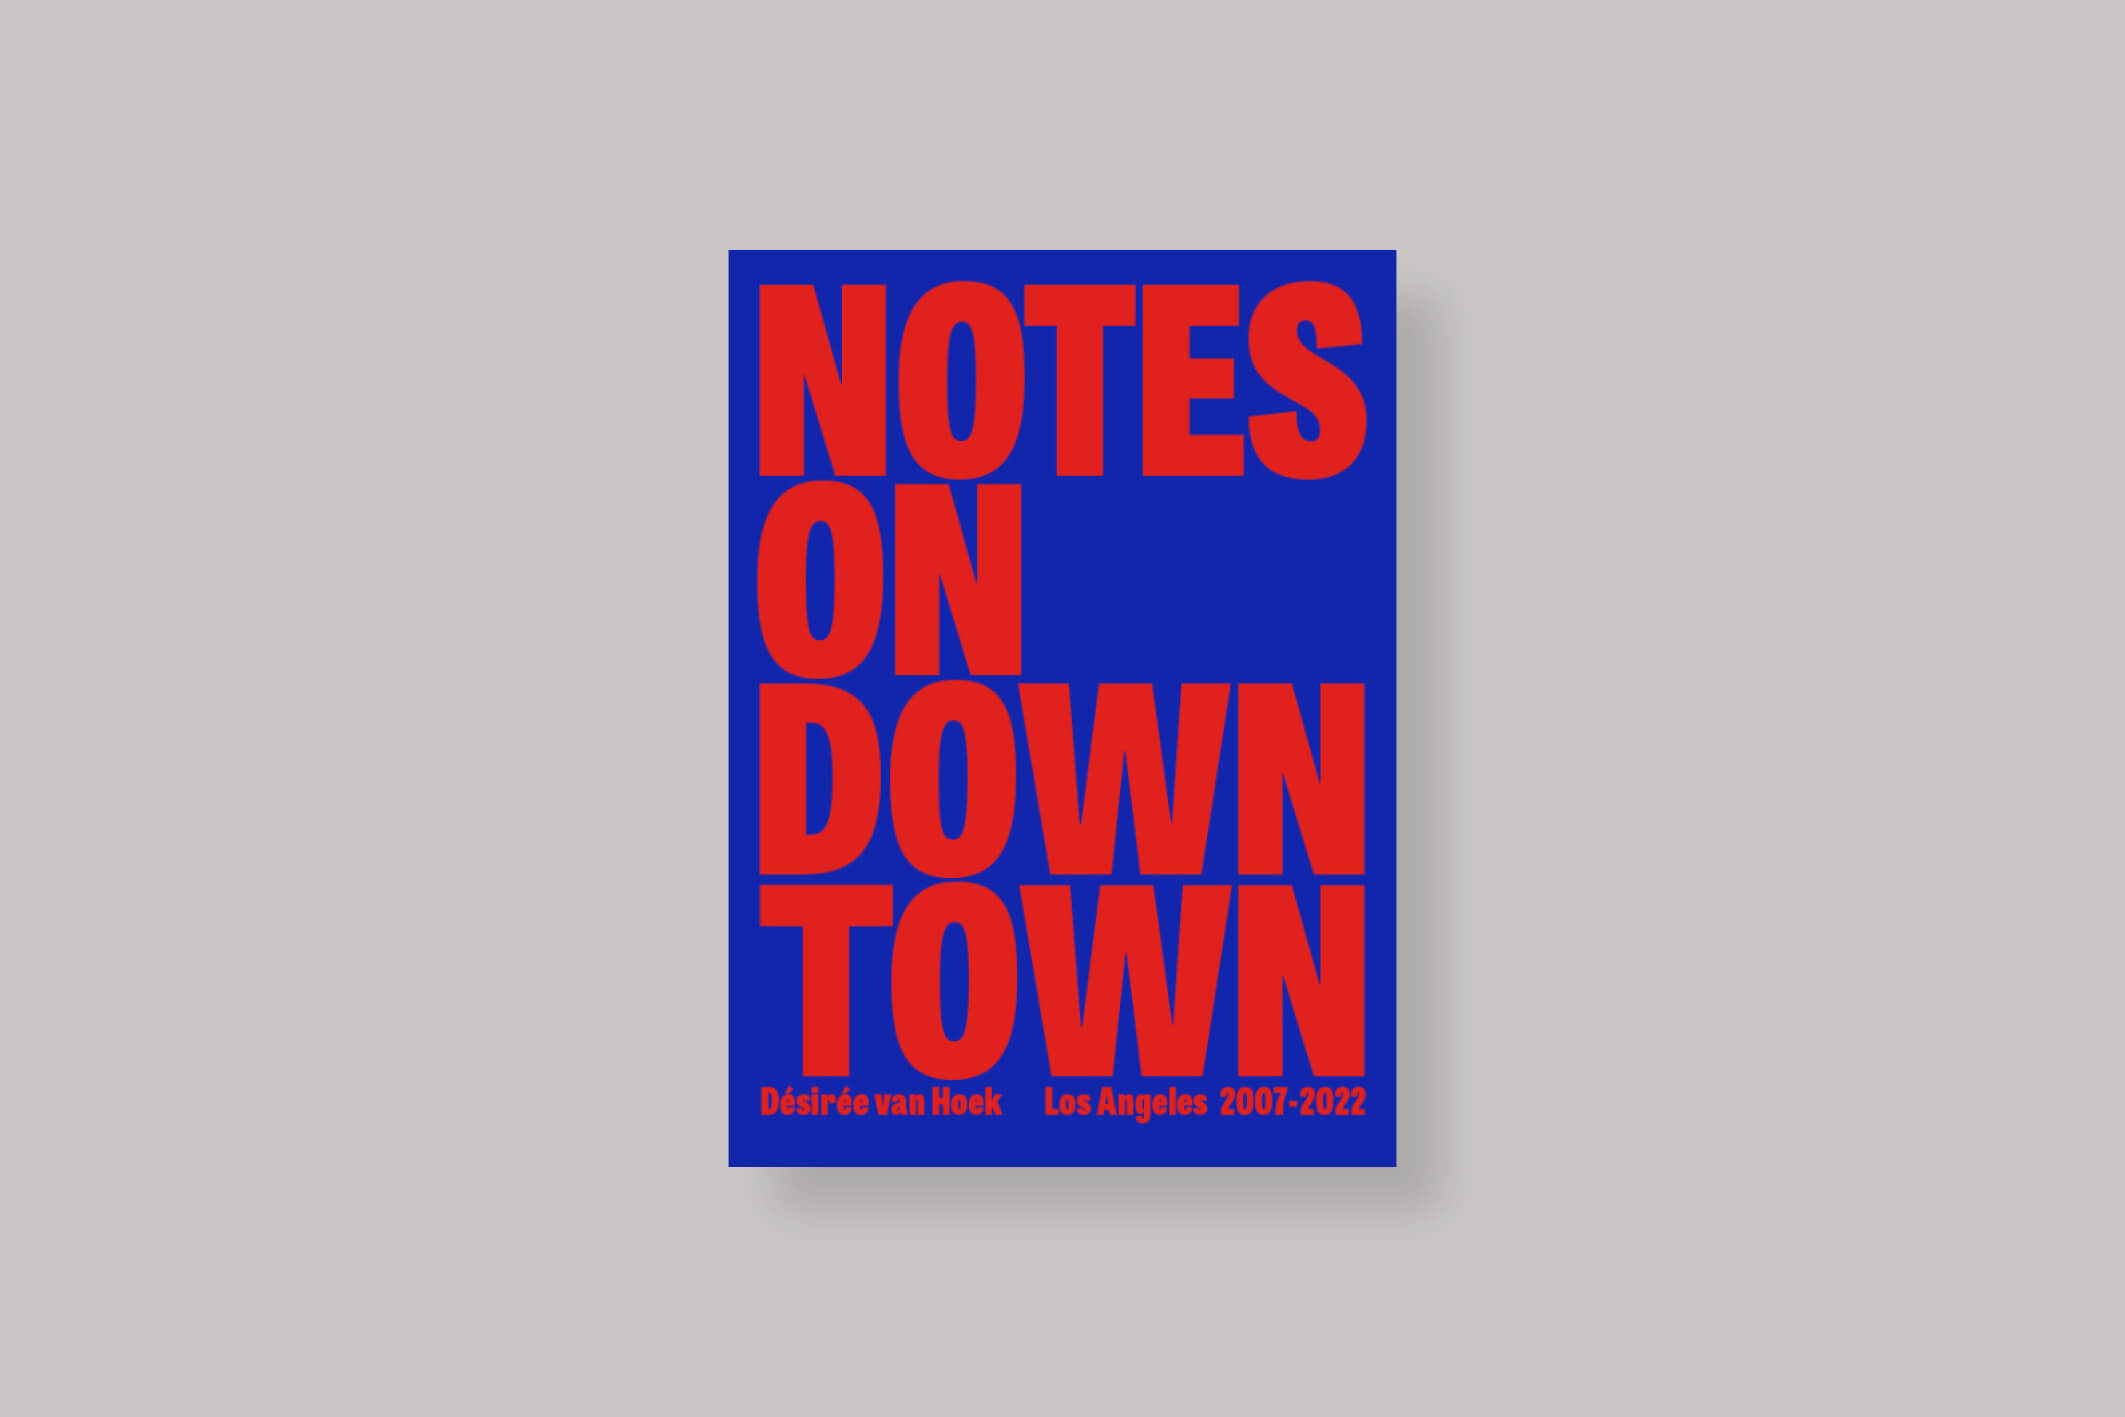 Notes-on-downtown-desiree-van-hoek-cover